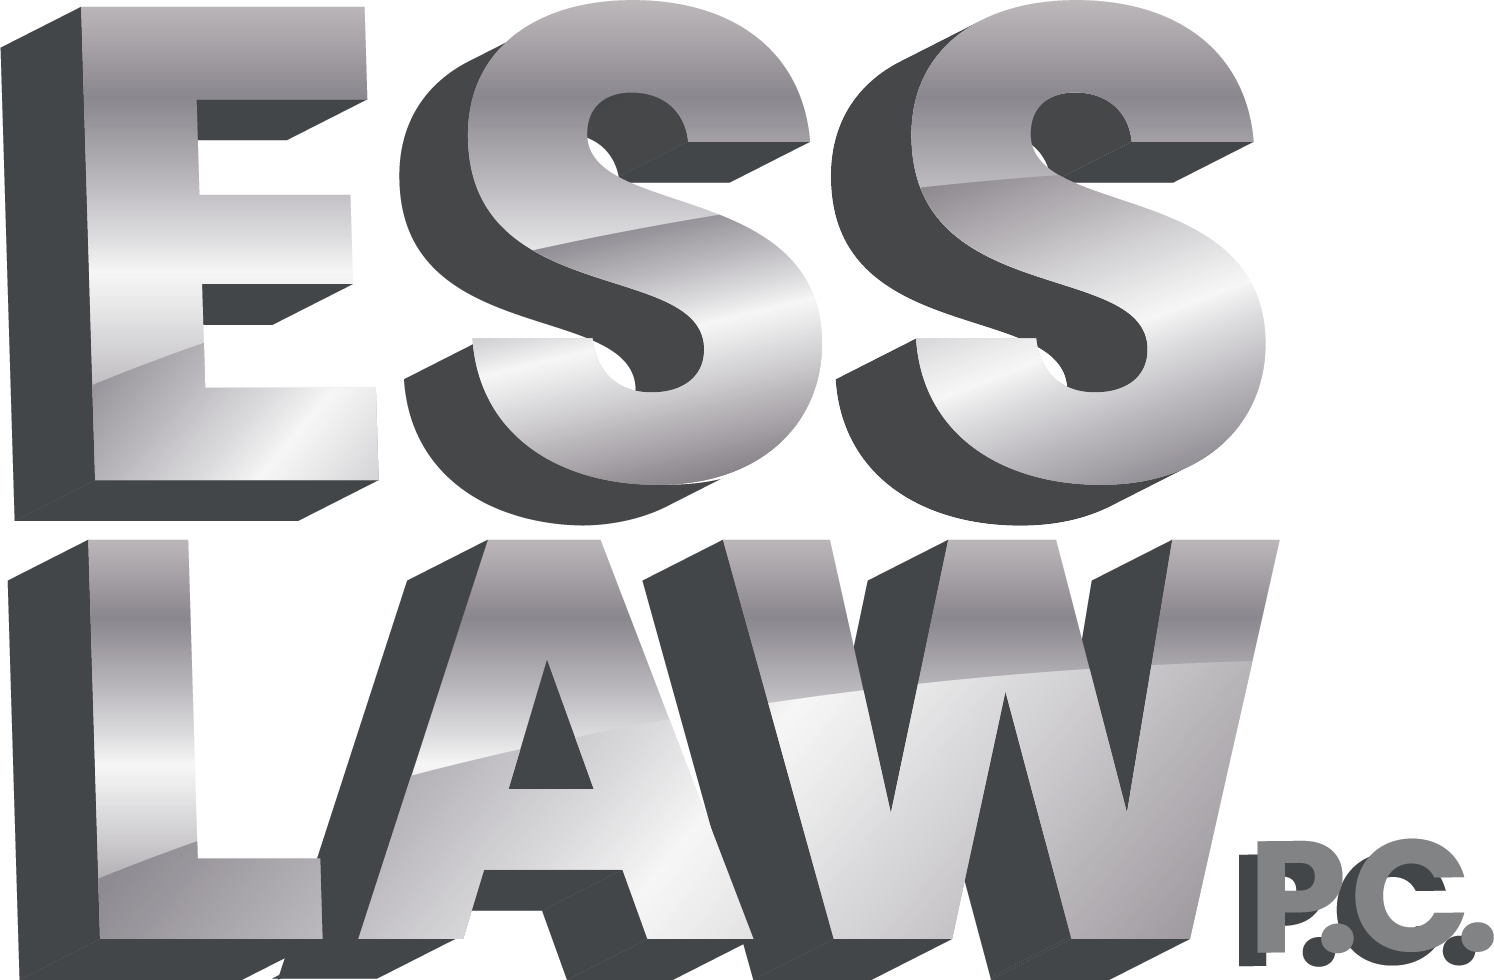 Ess Law